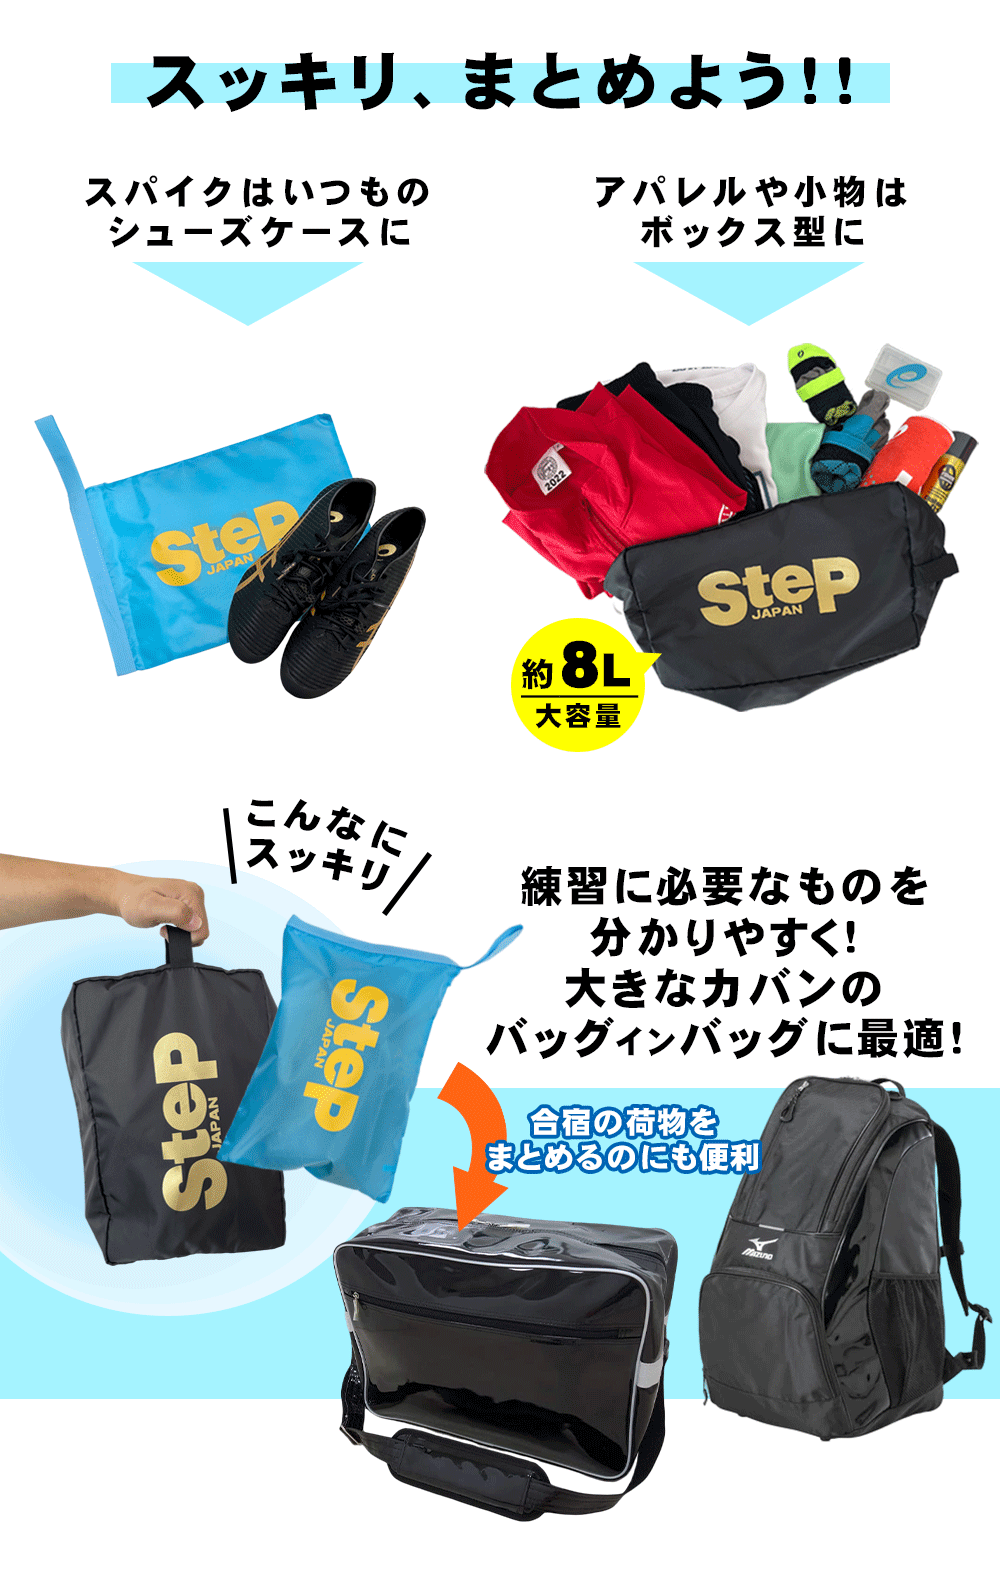 SteP SPORTS ONLINE / オリジナル ボックス型シューズケース ファスナー付